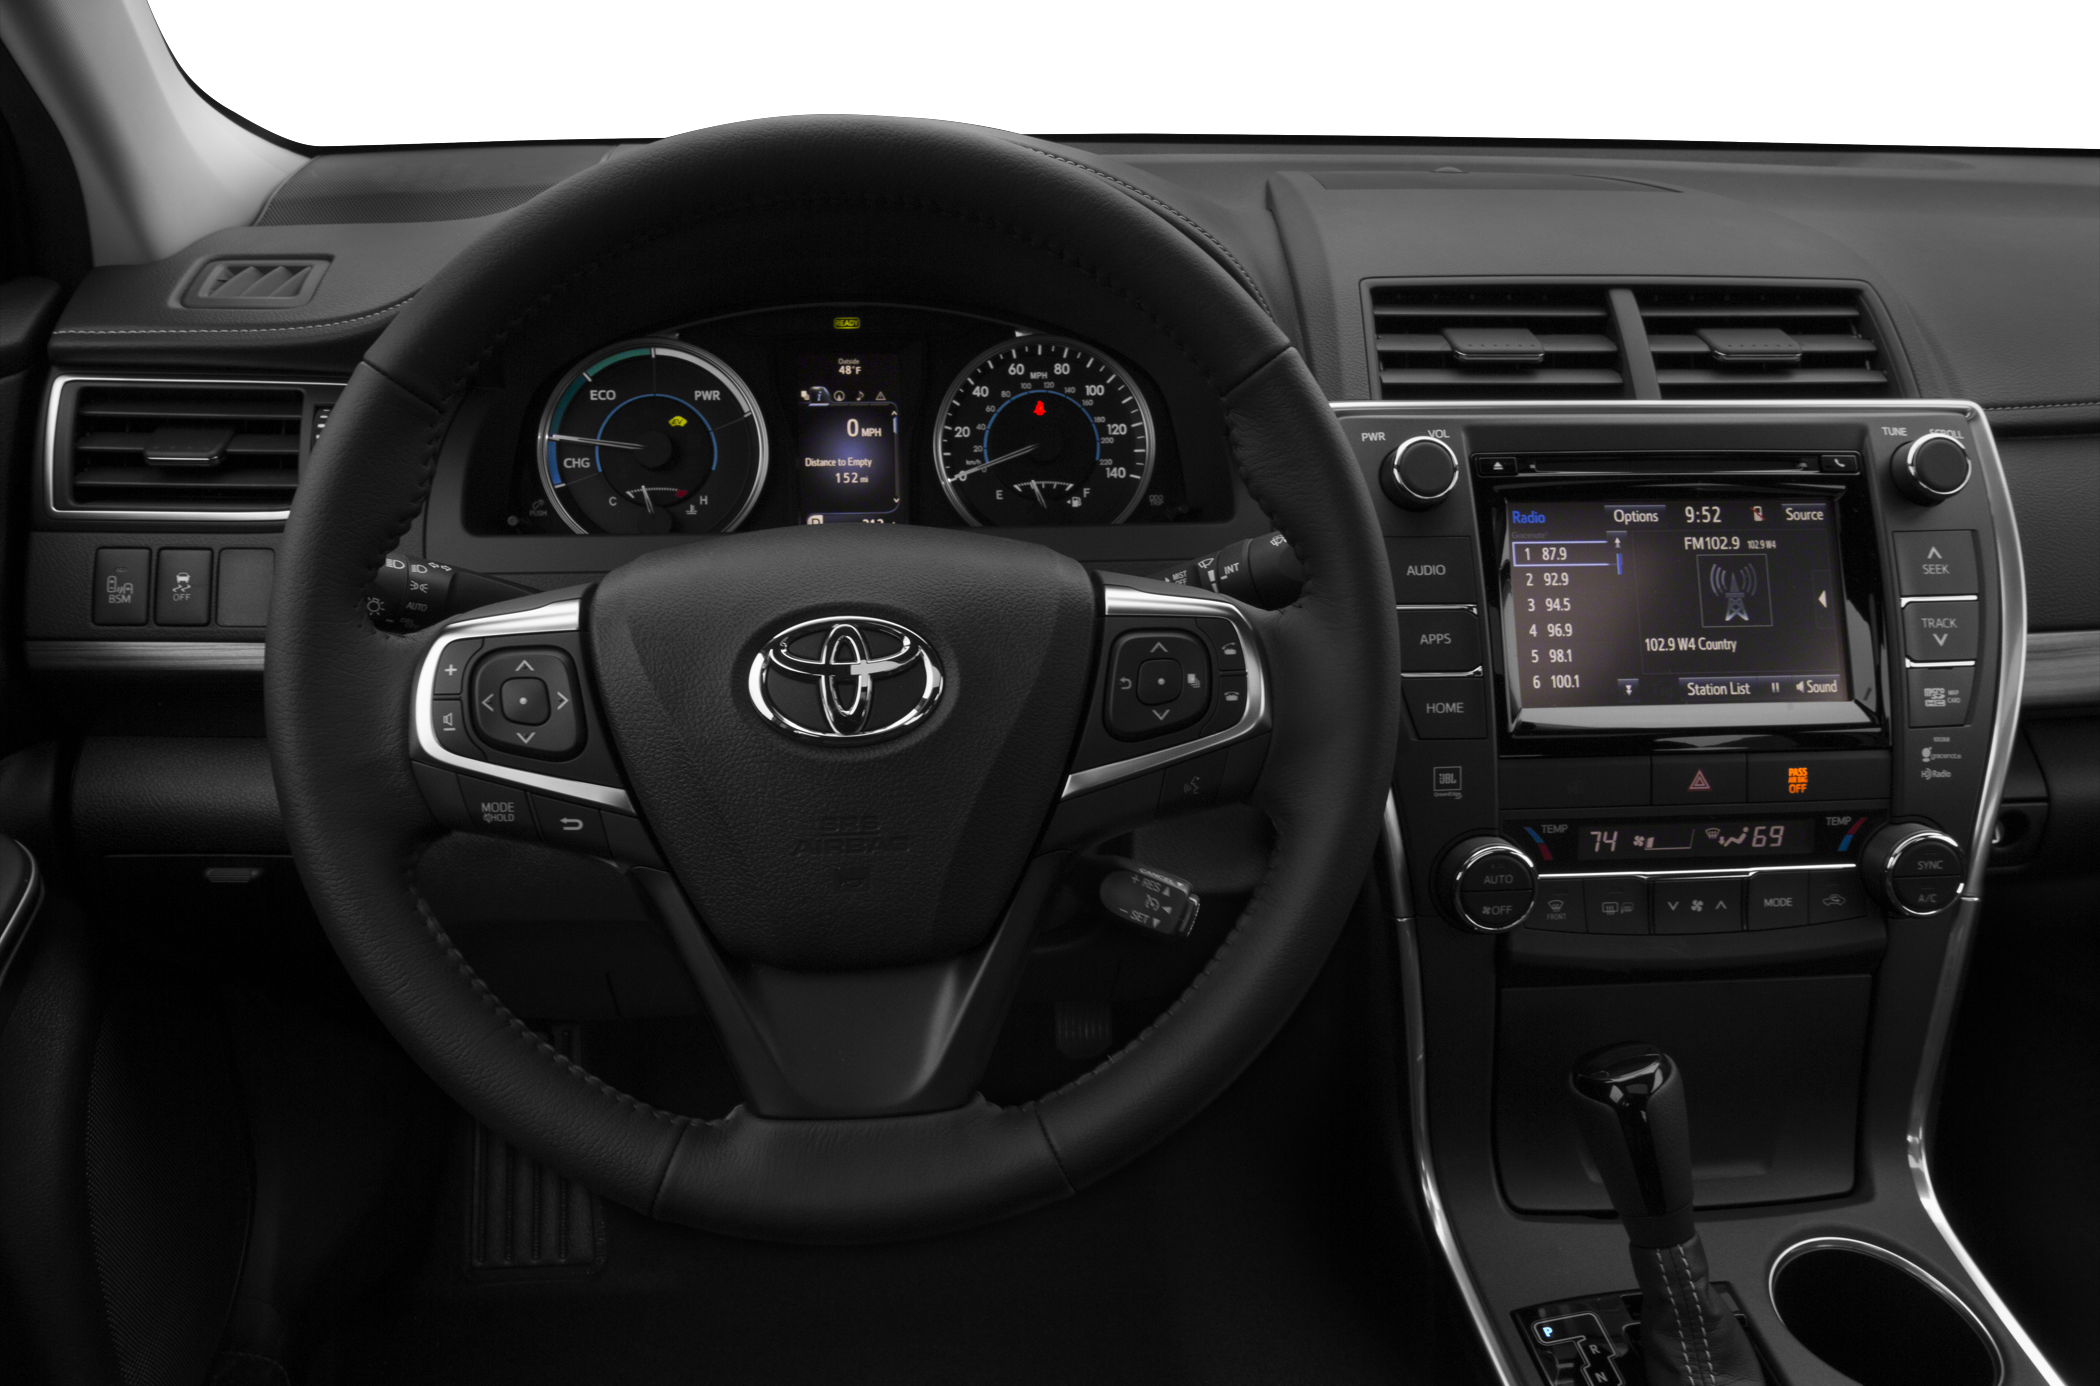 2015 Toyota Camry Hybrid